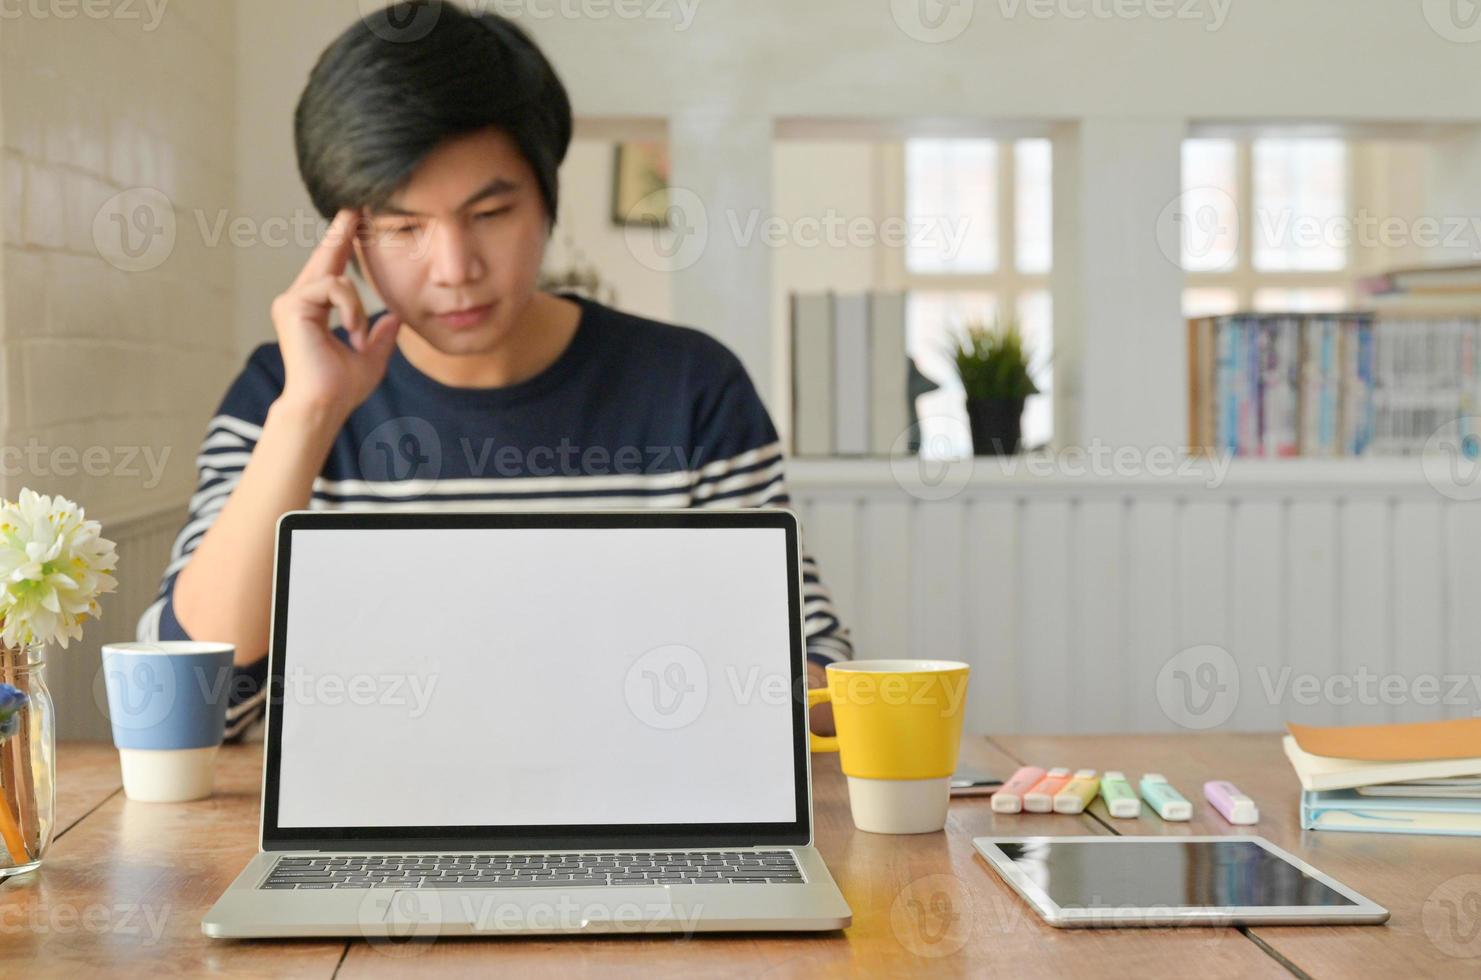 een laptop en een smartphone op tafel geplaatst en een jonge man zit achterin te werken. foto